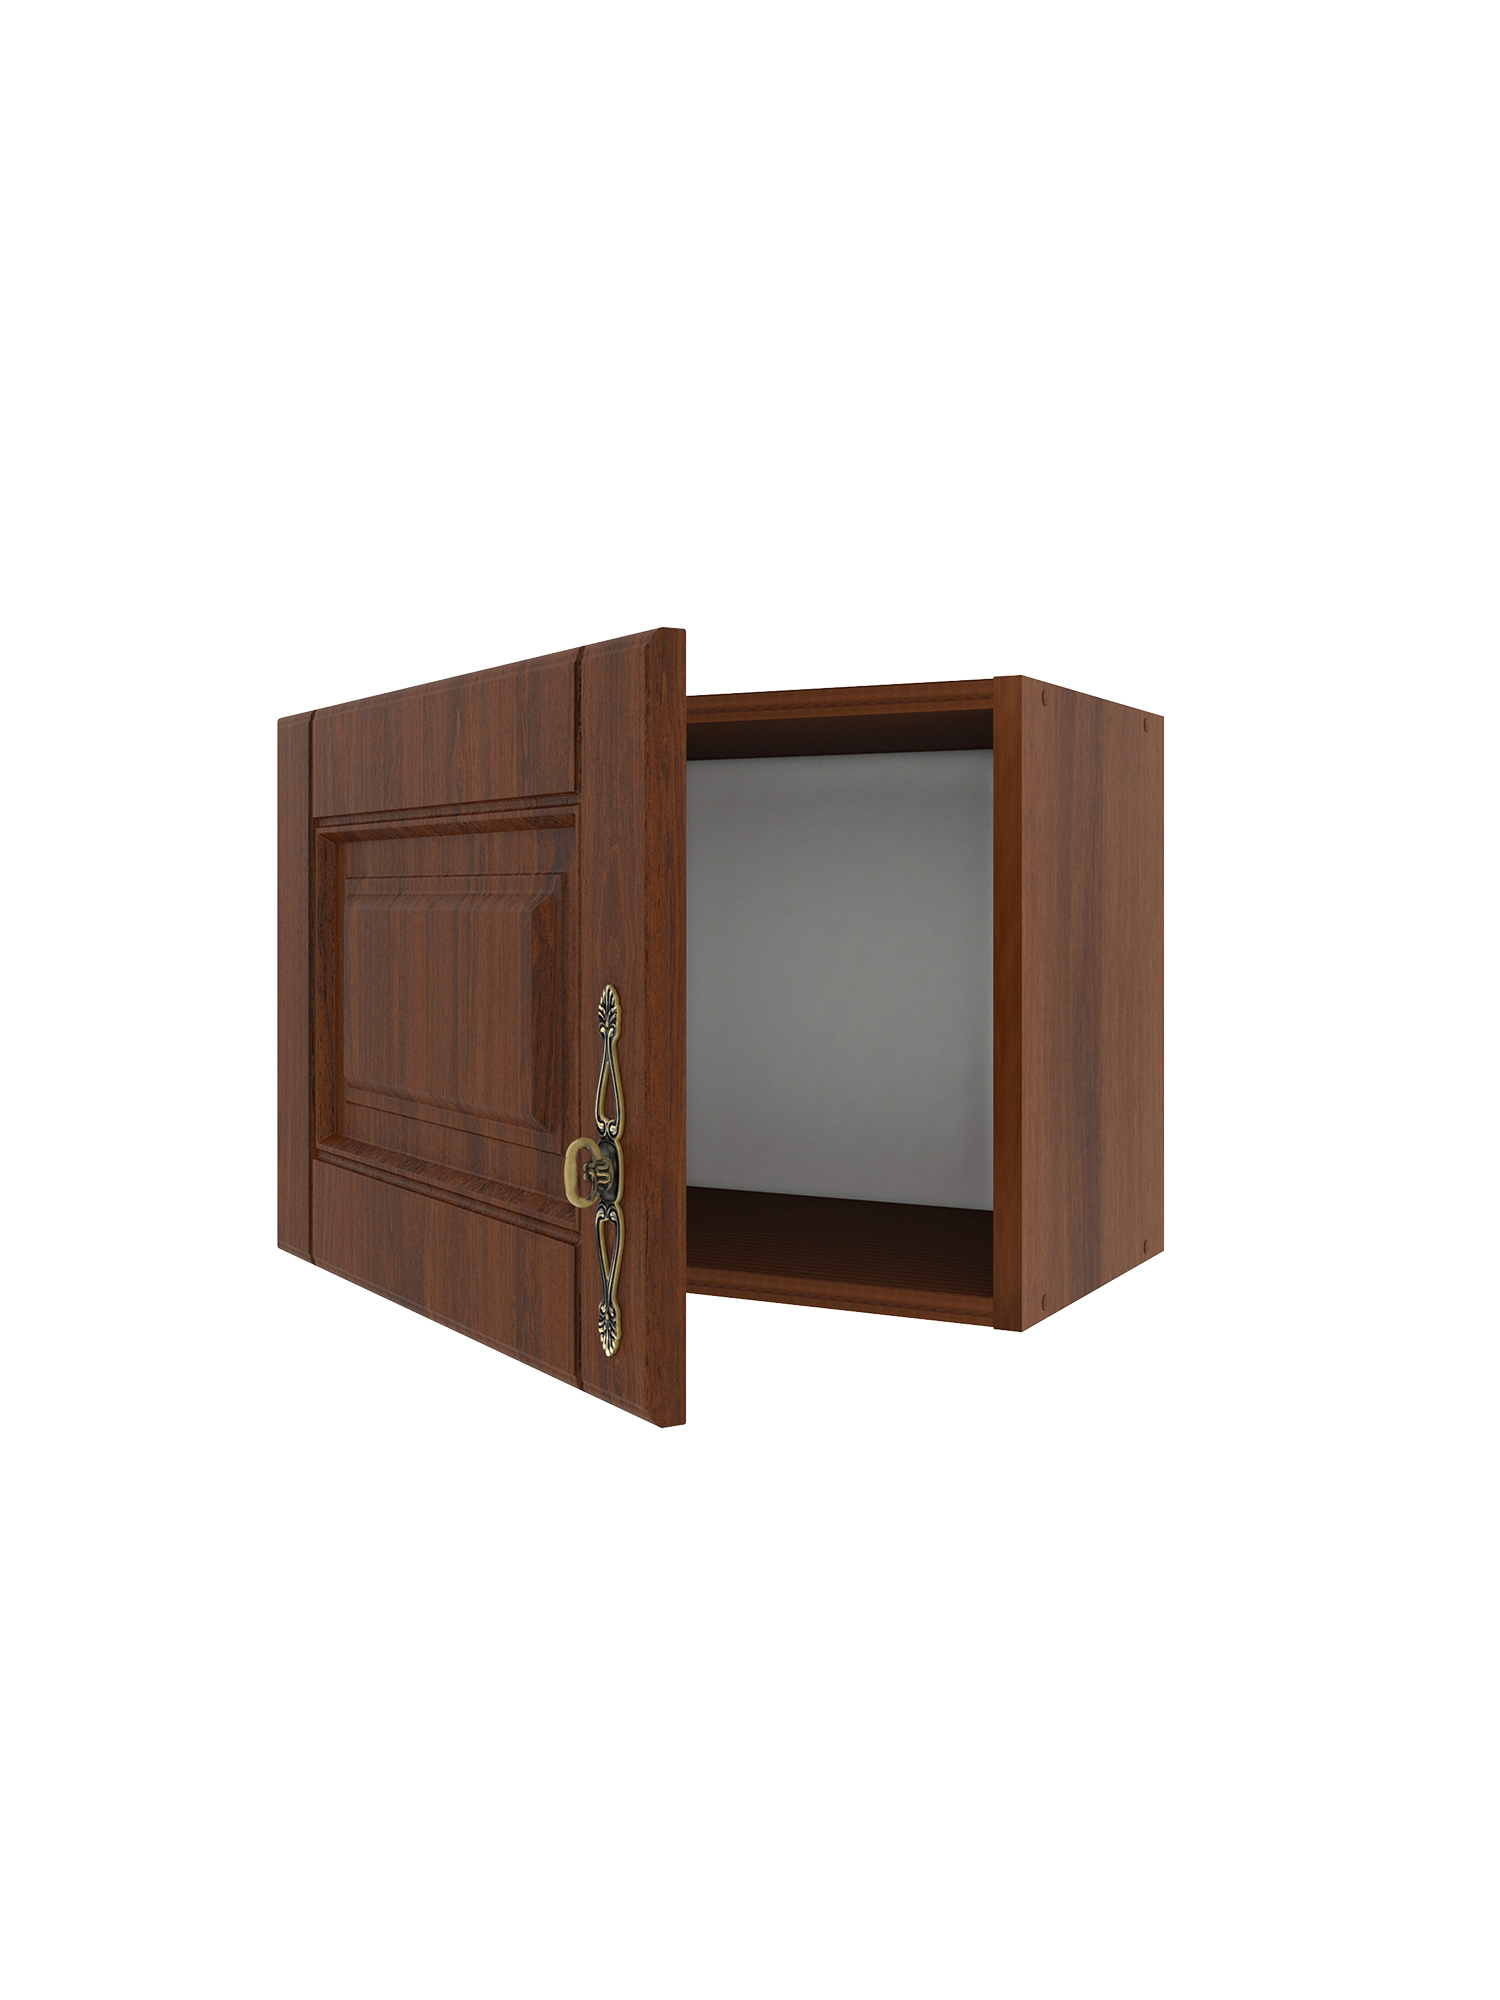 Шкаф навесной для вытяжки Beneli Ш50 с фасадом "ОРЕХ" (СТЛ.375.09) 50 см